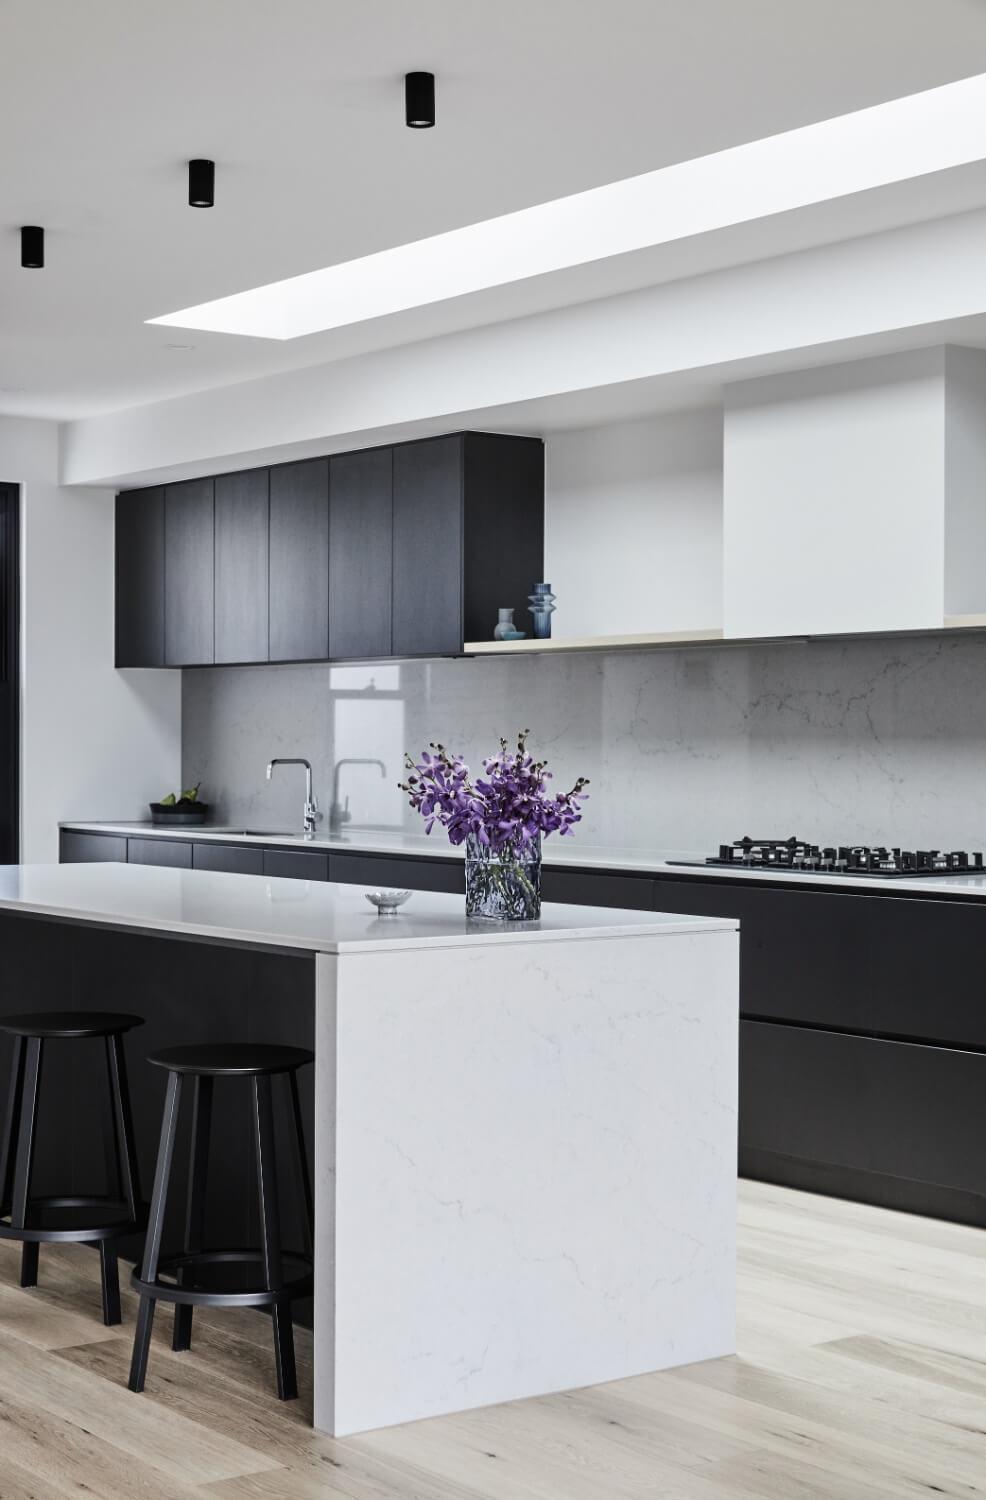 Skylight Illuminates Kitchen Space With Natural Light